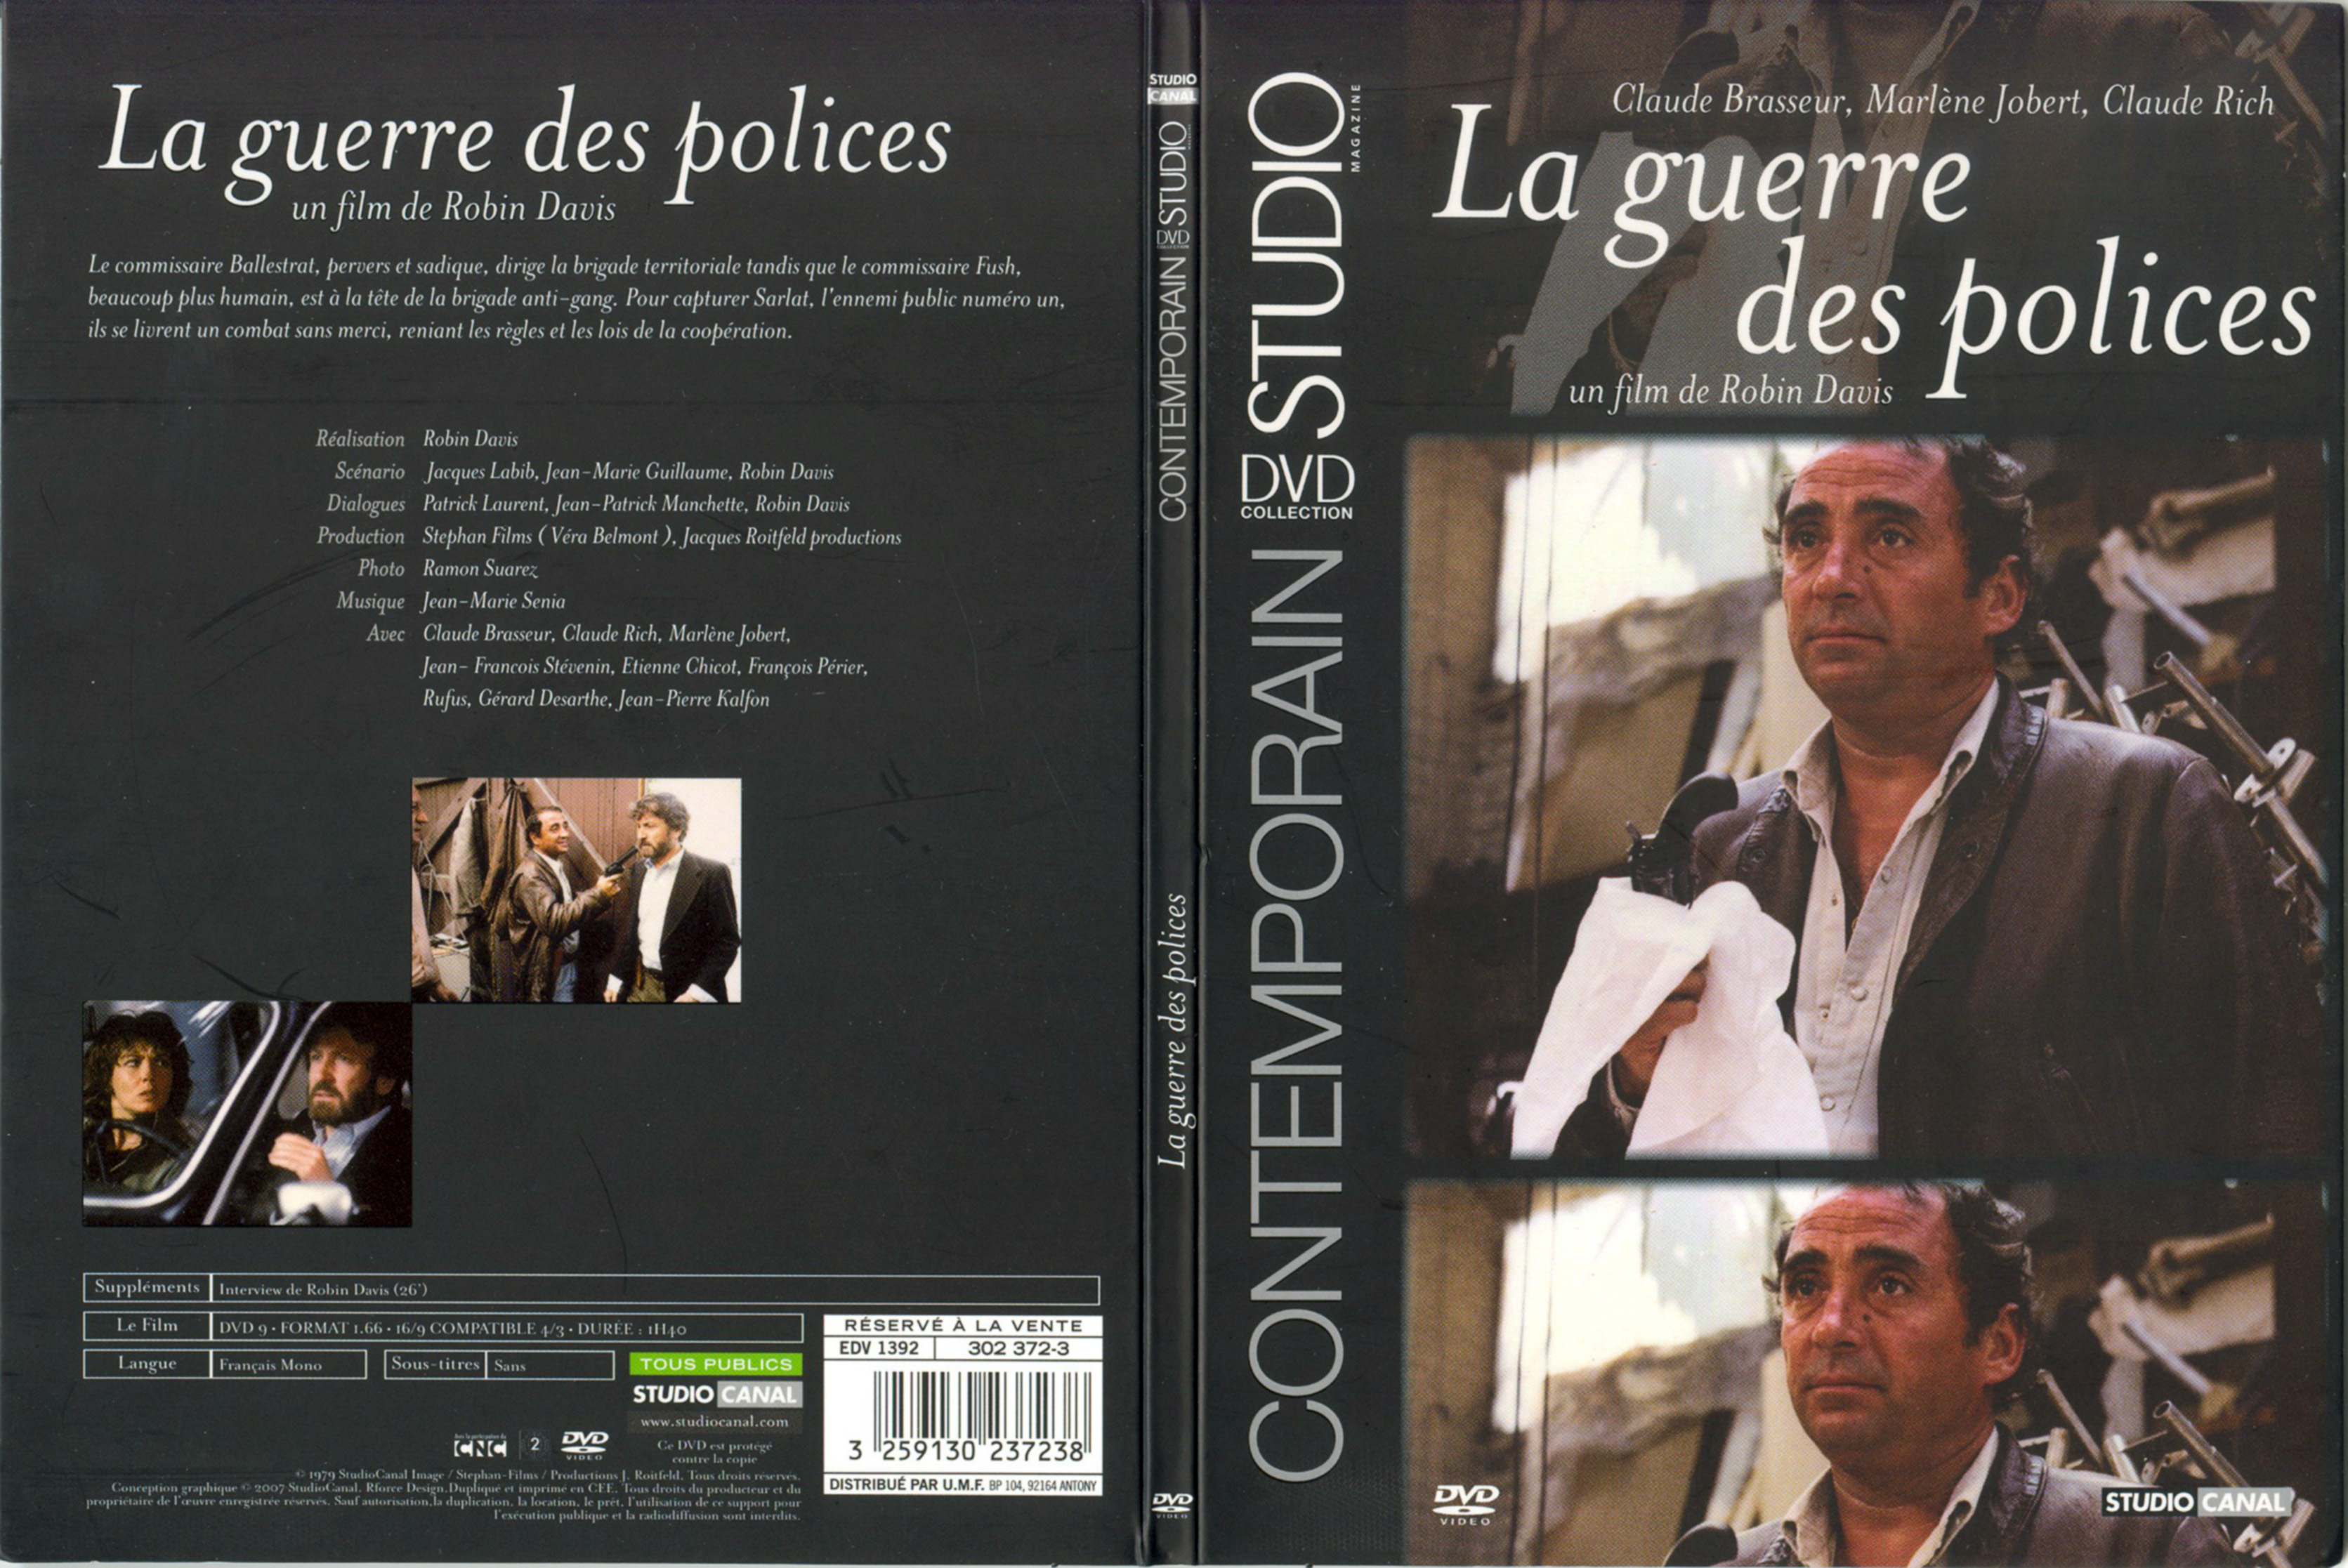 Jaquette DVD La guerre des polices